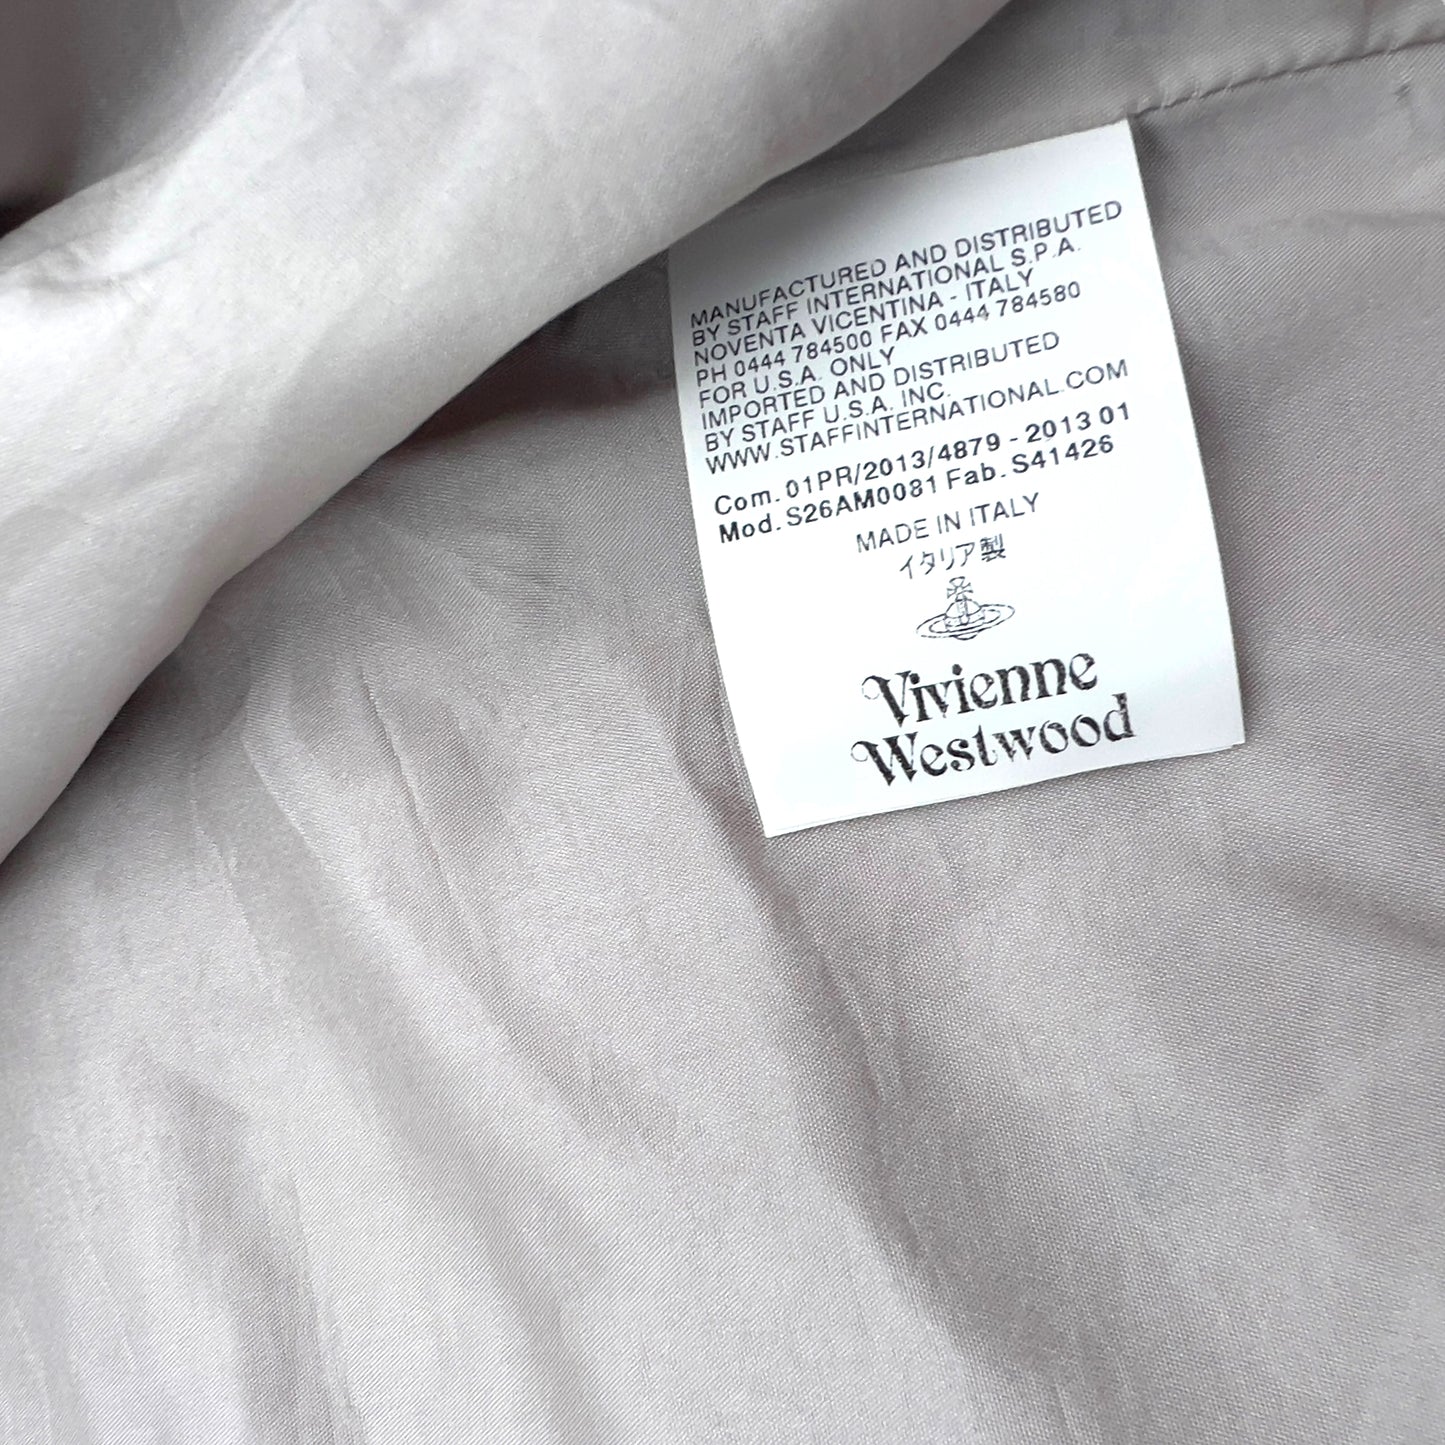 Vivienne Westwood 2013 jacket